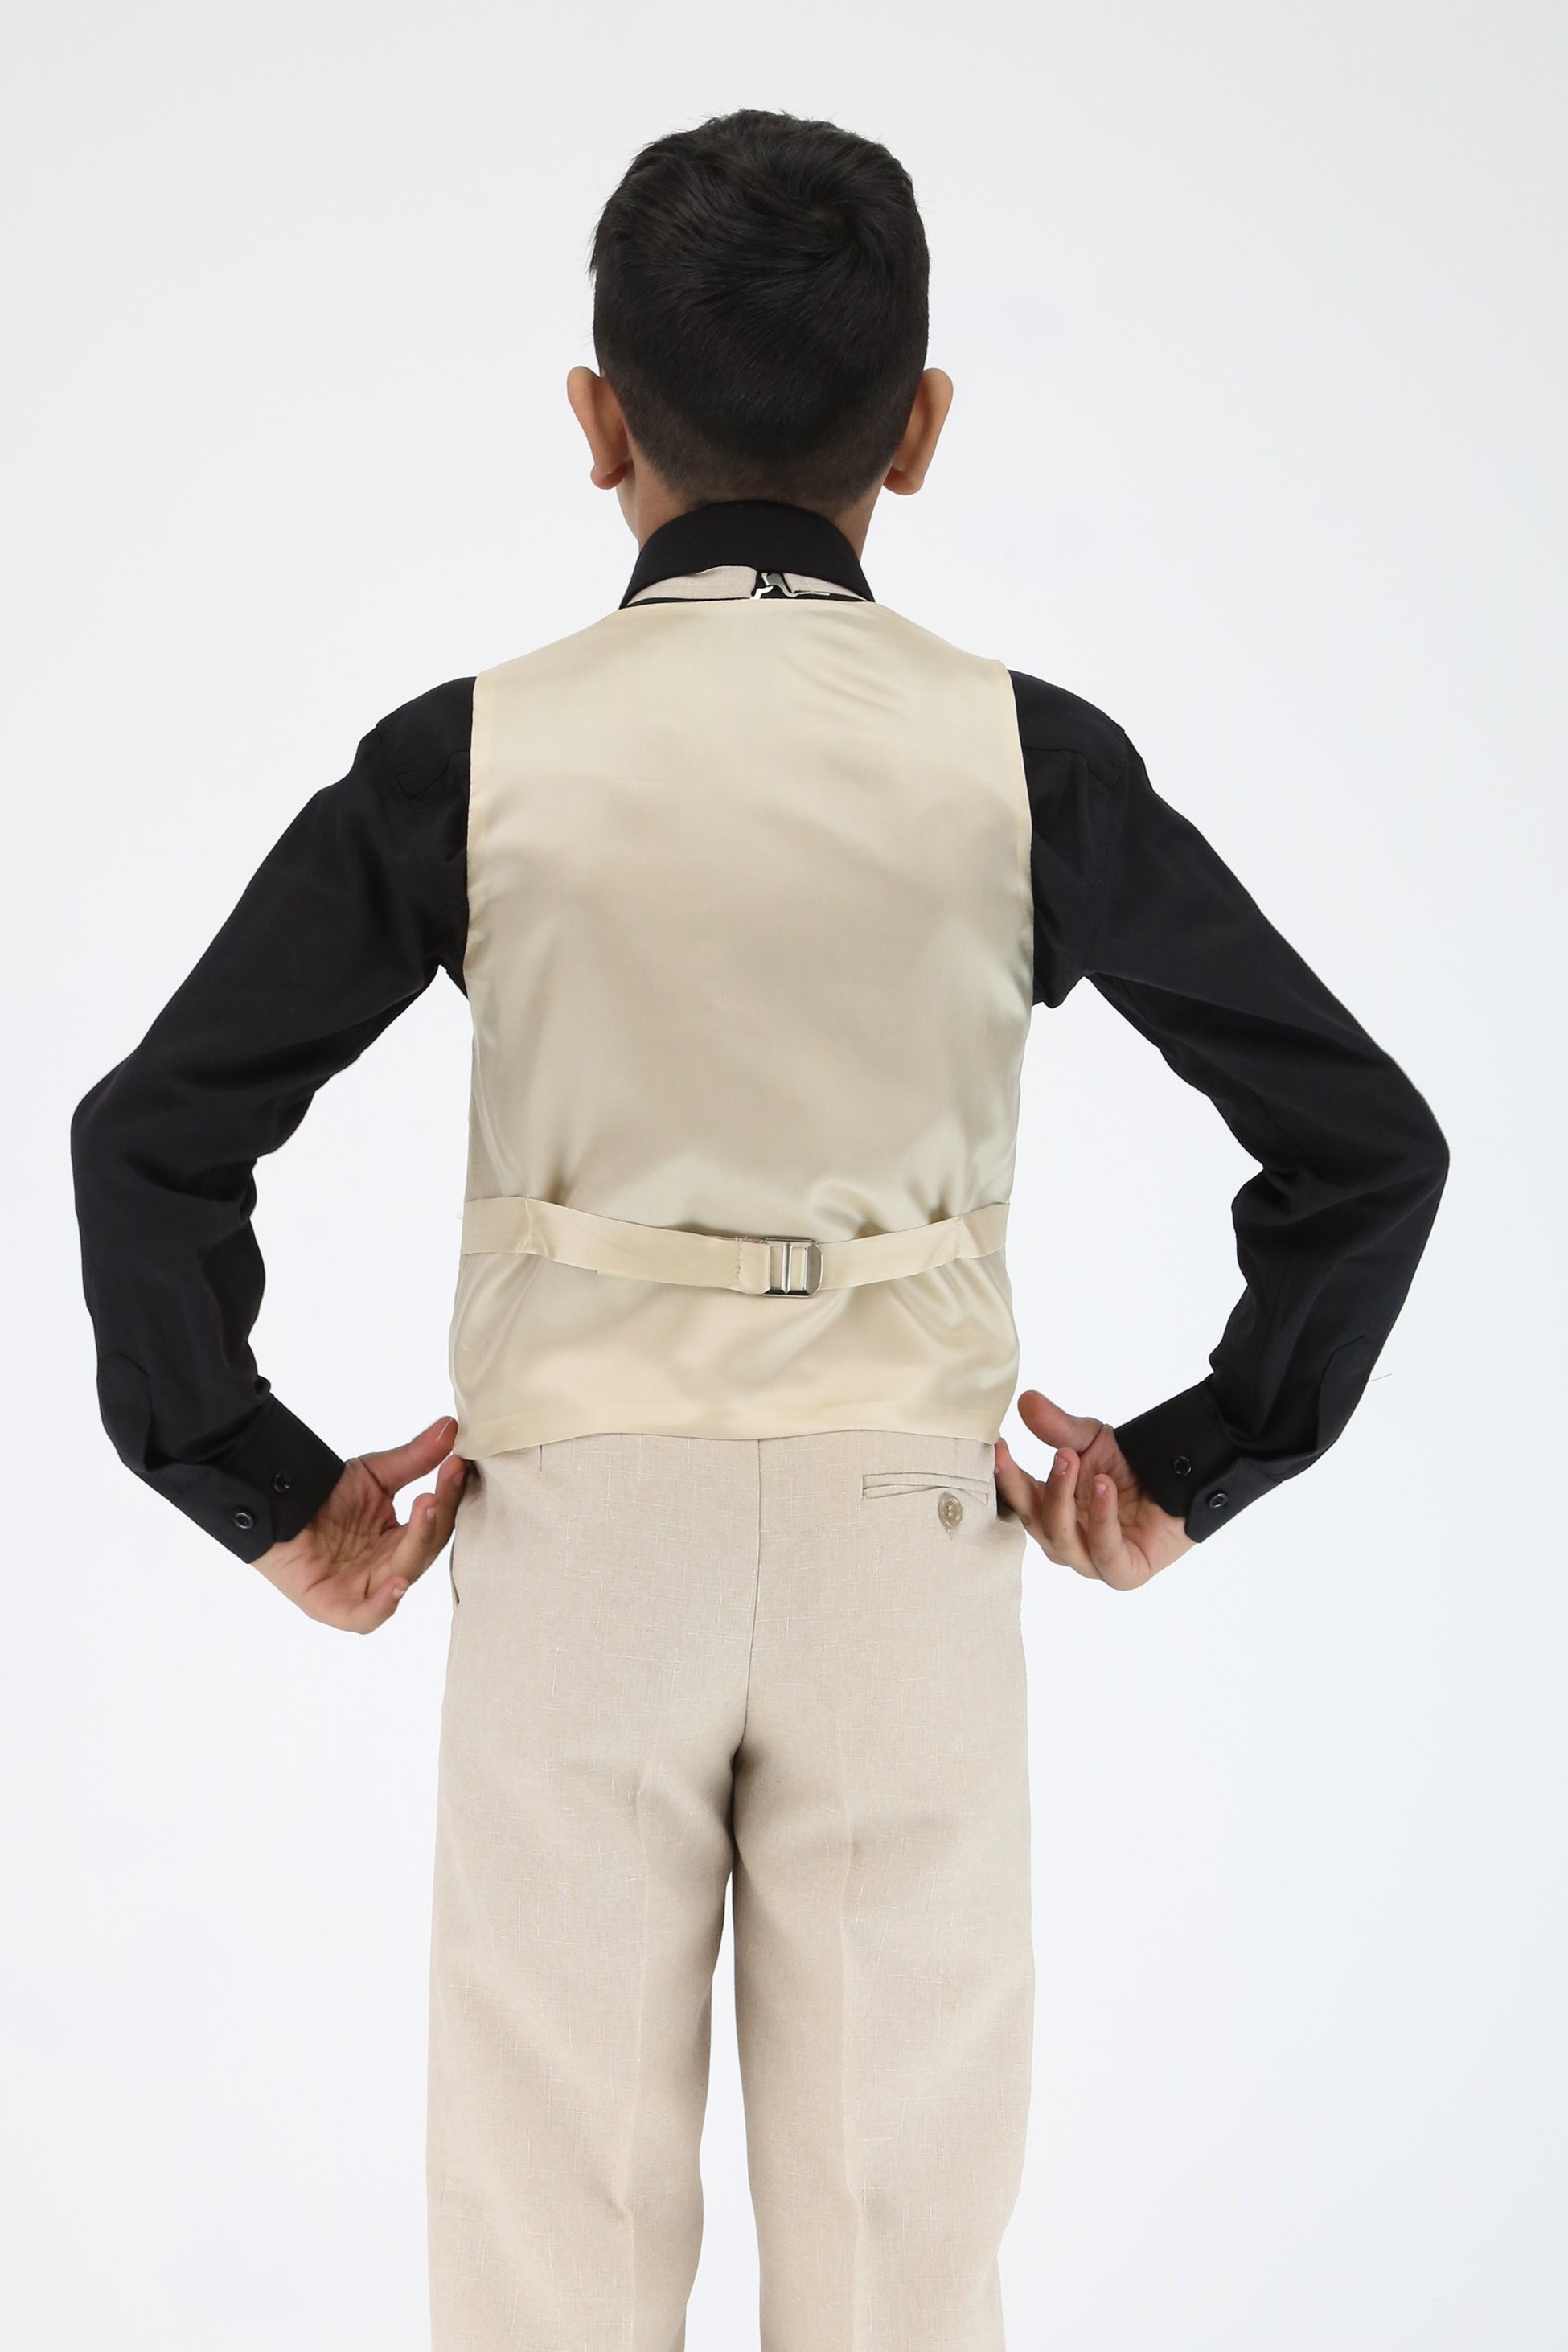 Boys Slim Fit Textured 6-Piece Beige Communion Suit with Black Shirt